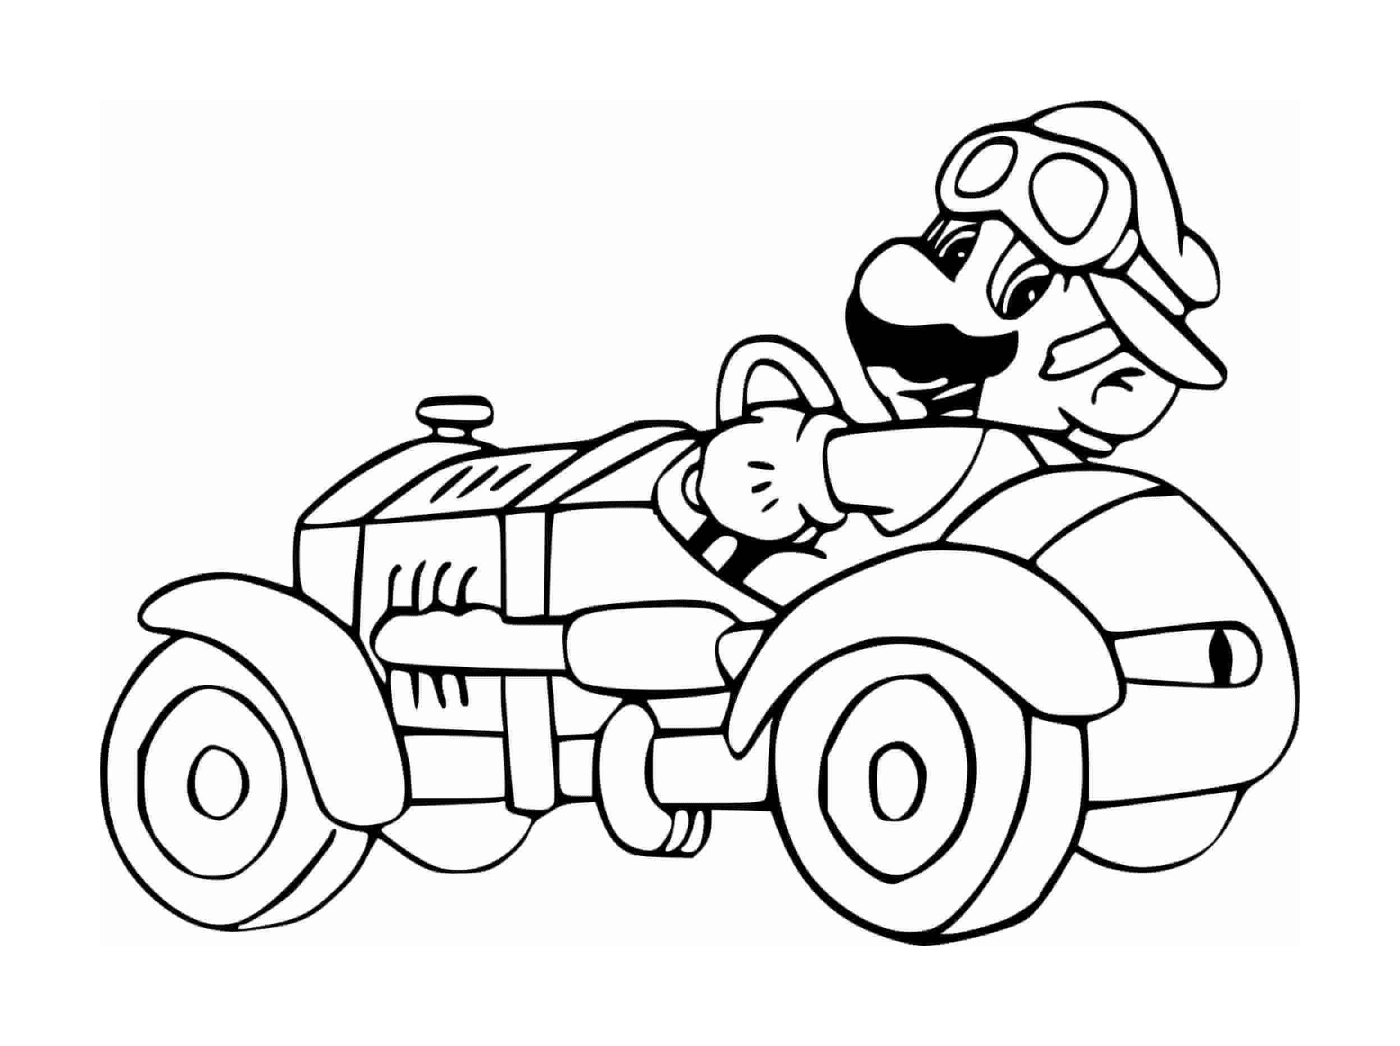  Mario fährt ein Auto 